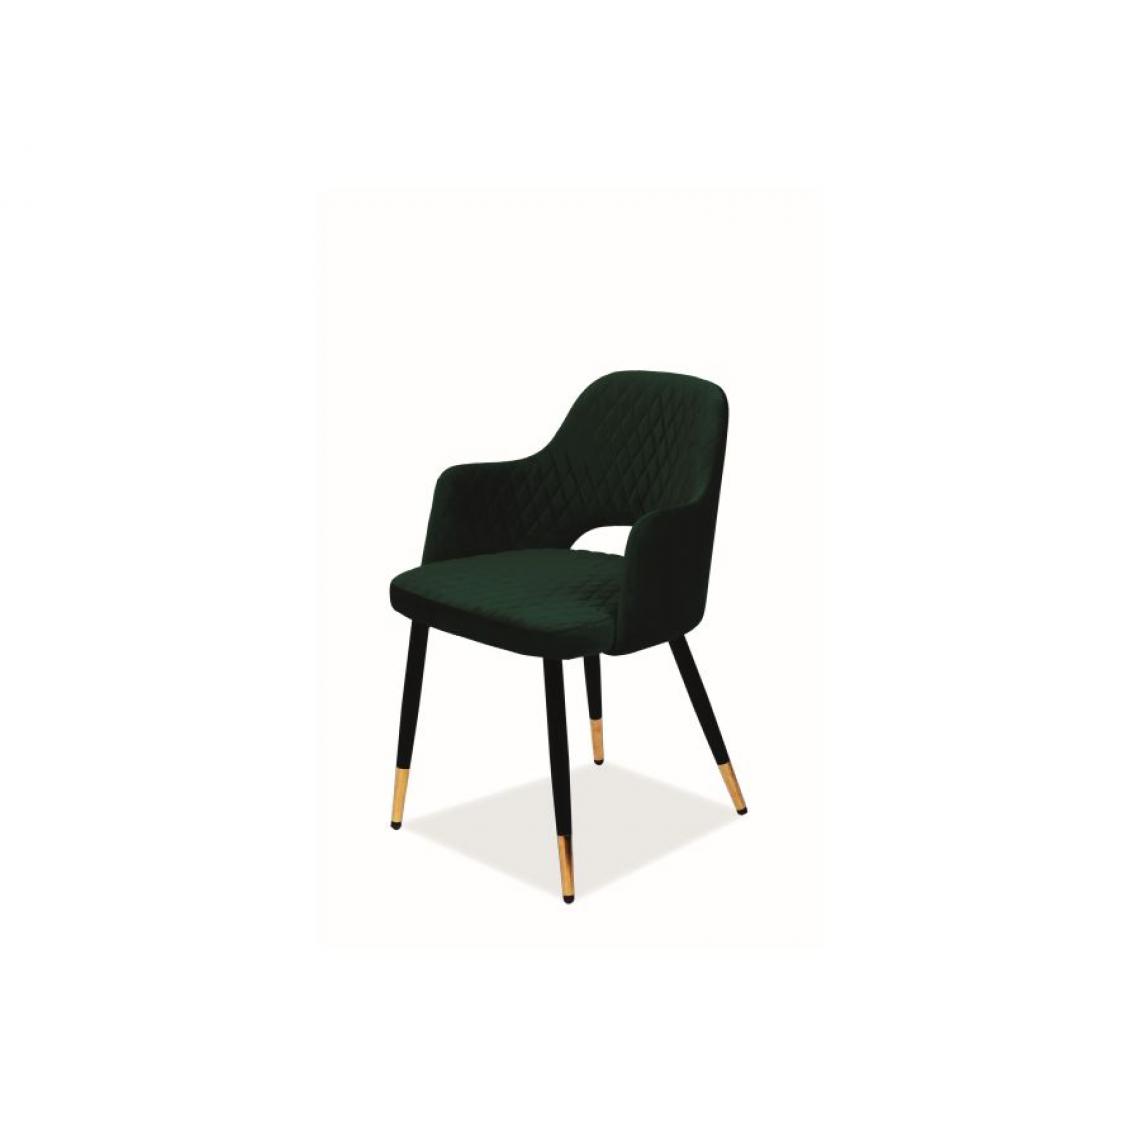 Hucoco - FRANGO | Chaise de salle à manger avec accoudoirs | Dimensions 82x55x45 cm | Rembourrage tissu velouté | Style scandinave - Vert - Chaises